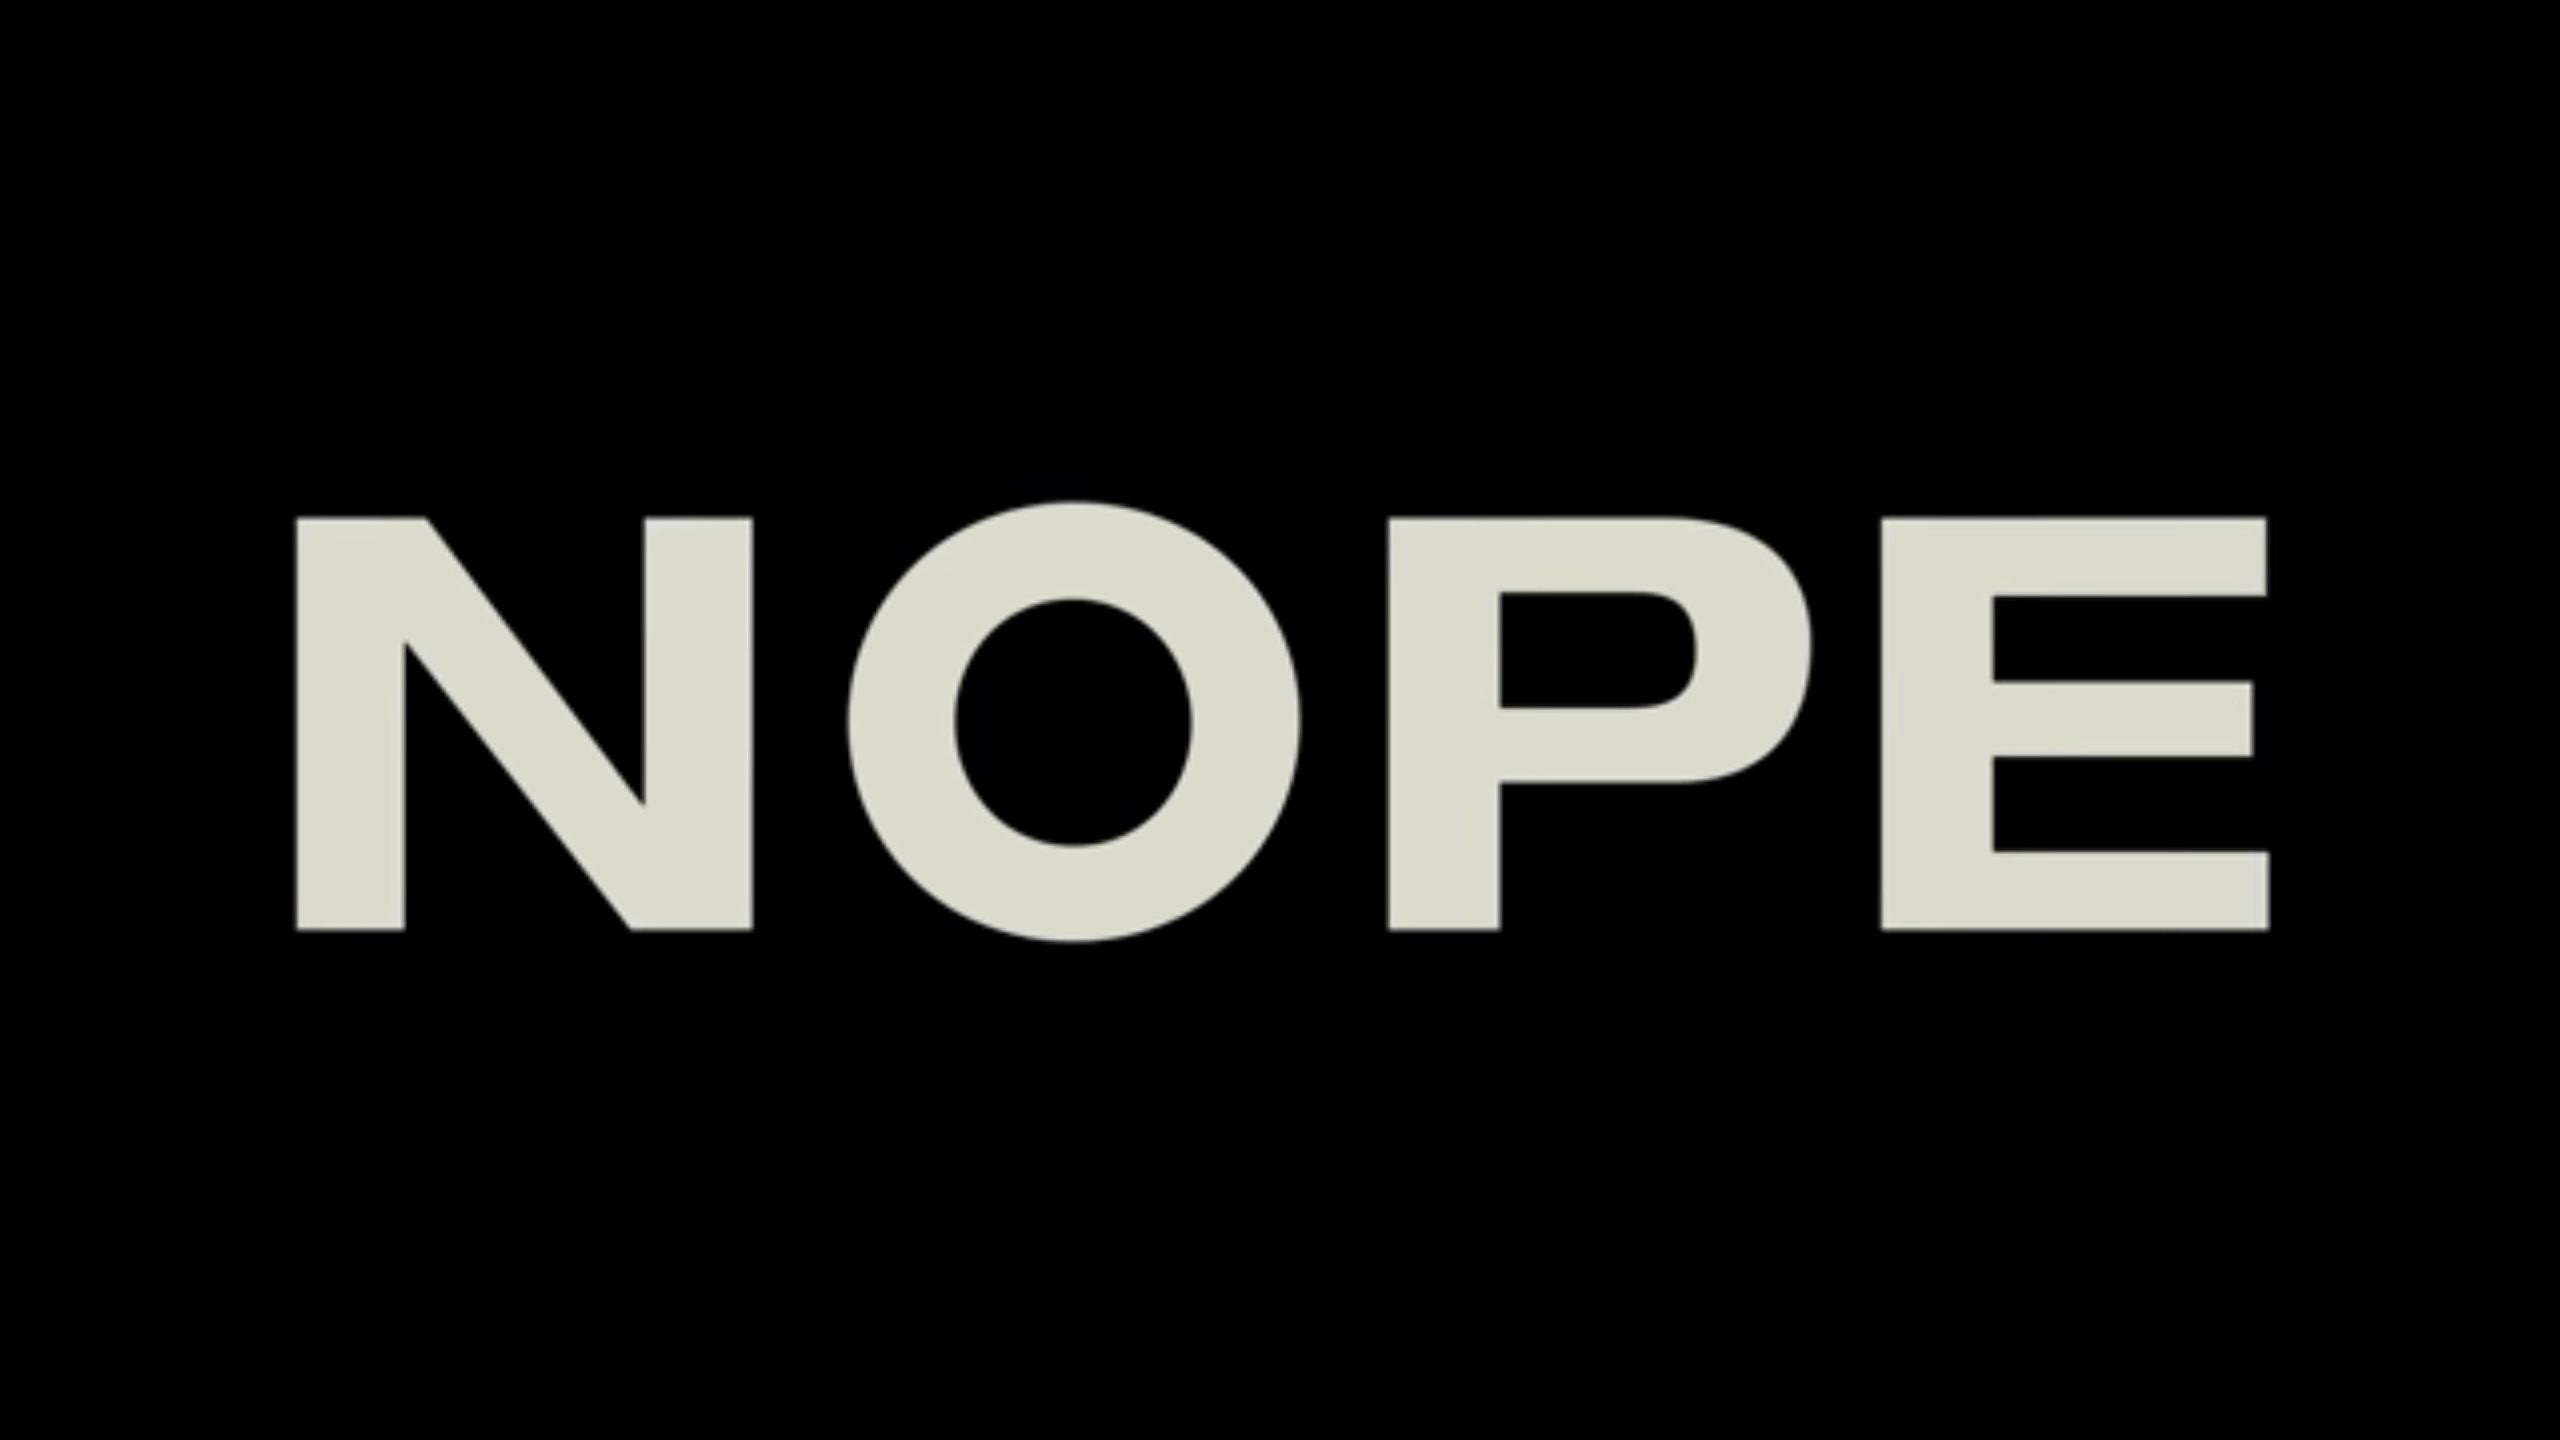 Nope (2022) – Ending Spoilers